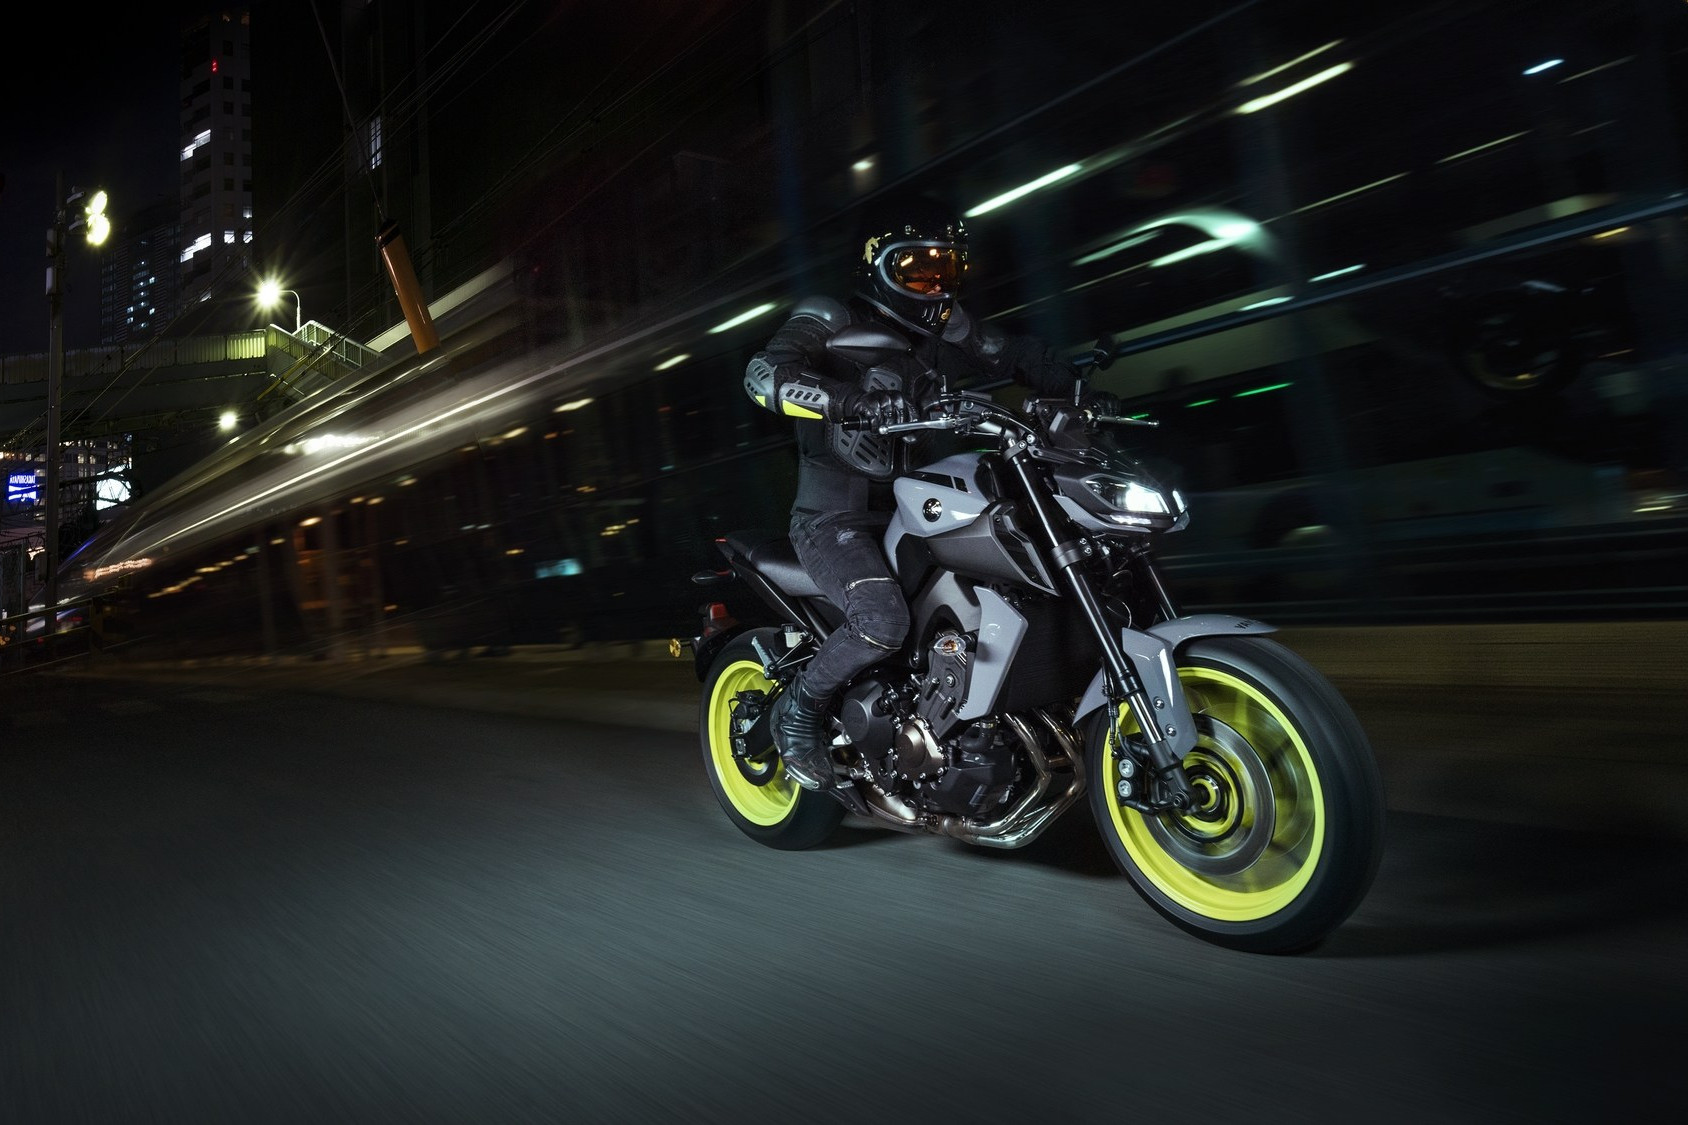 Conducir en moto por la noche: ¡Nuestros consejos para mejorar tu experiencia!